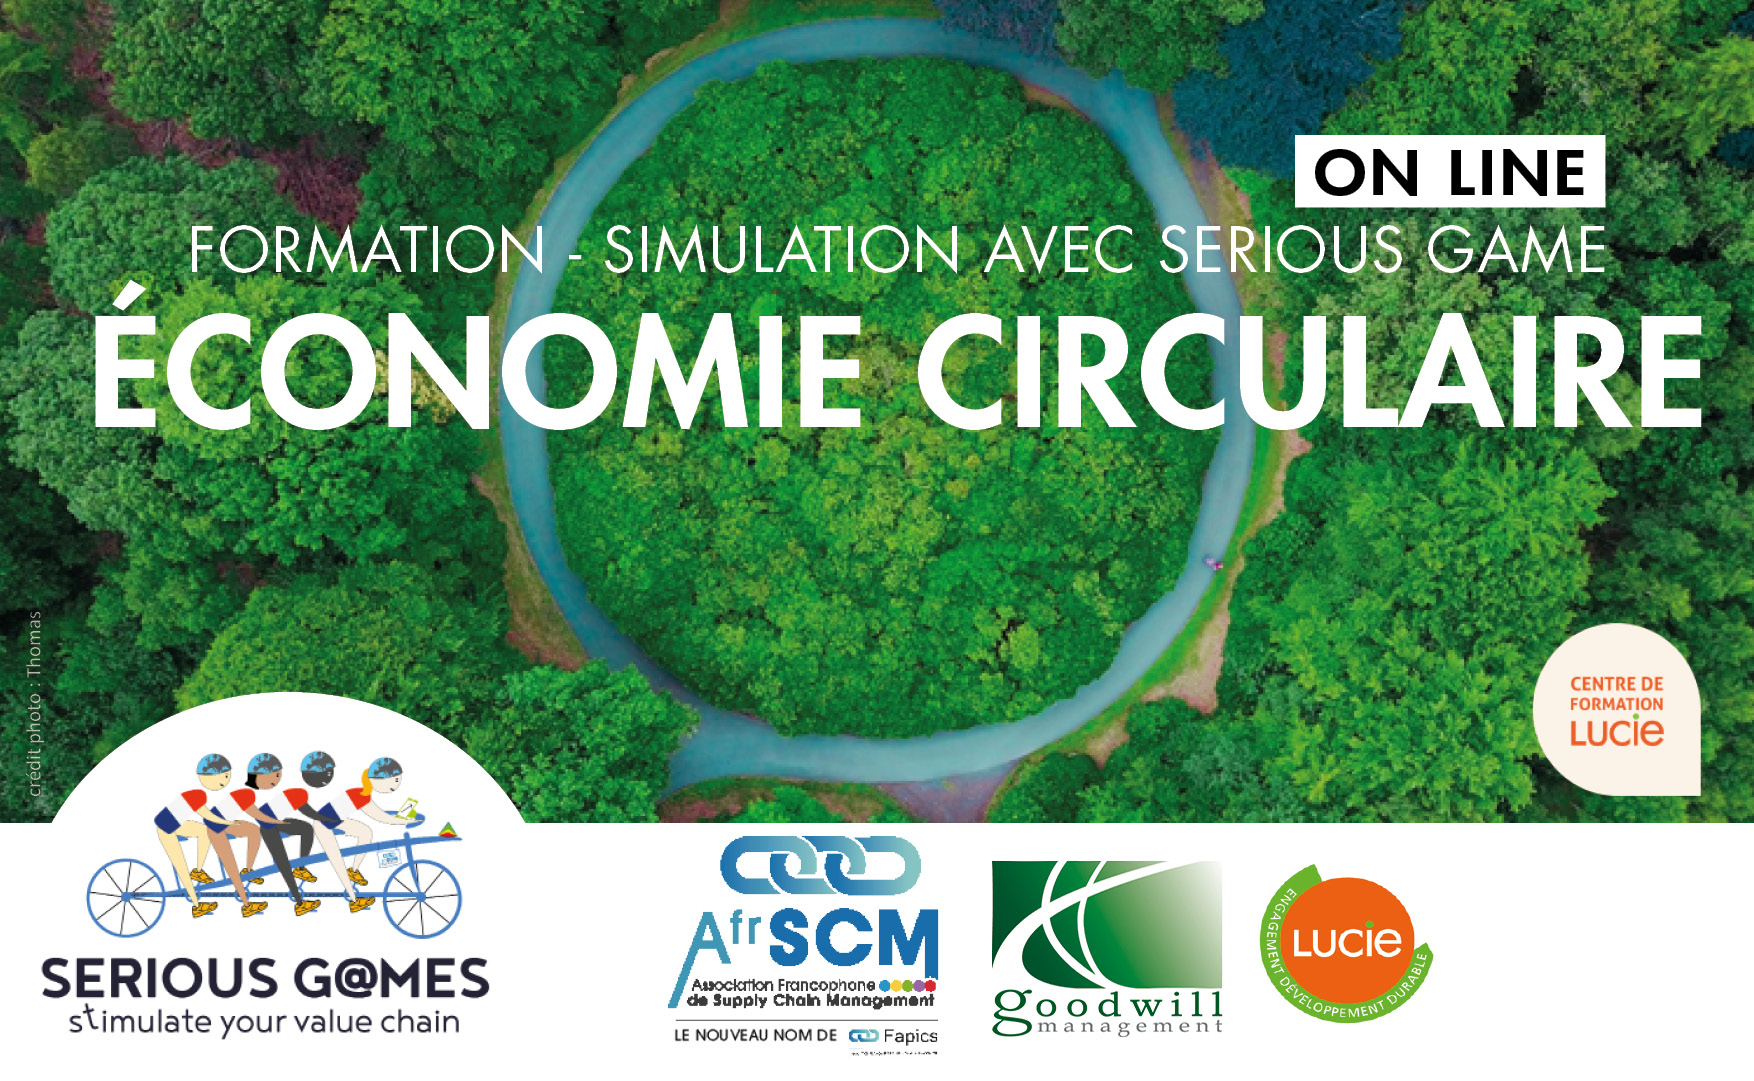 vignette-formation-economie-circulaire-agence-label-lucie-afrscm-fapics-serious-game-the-blue-connection